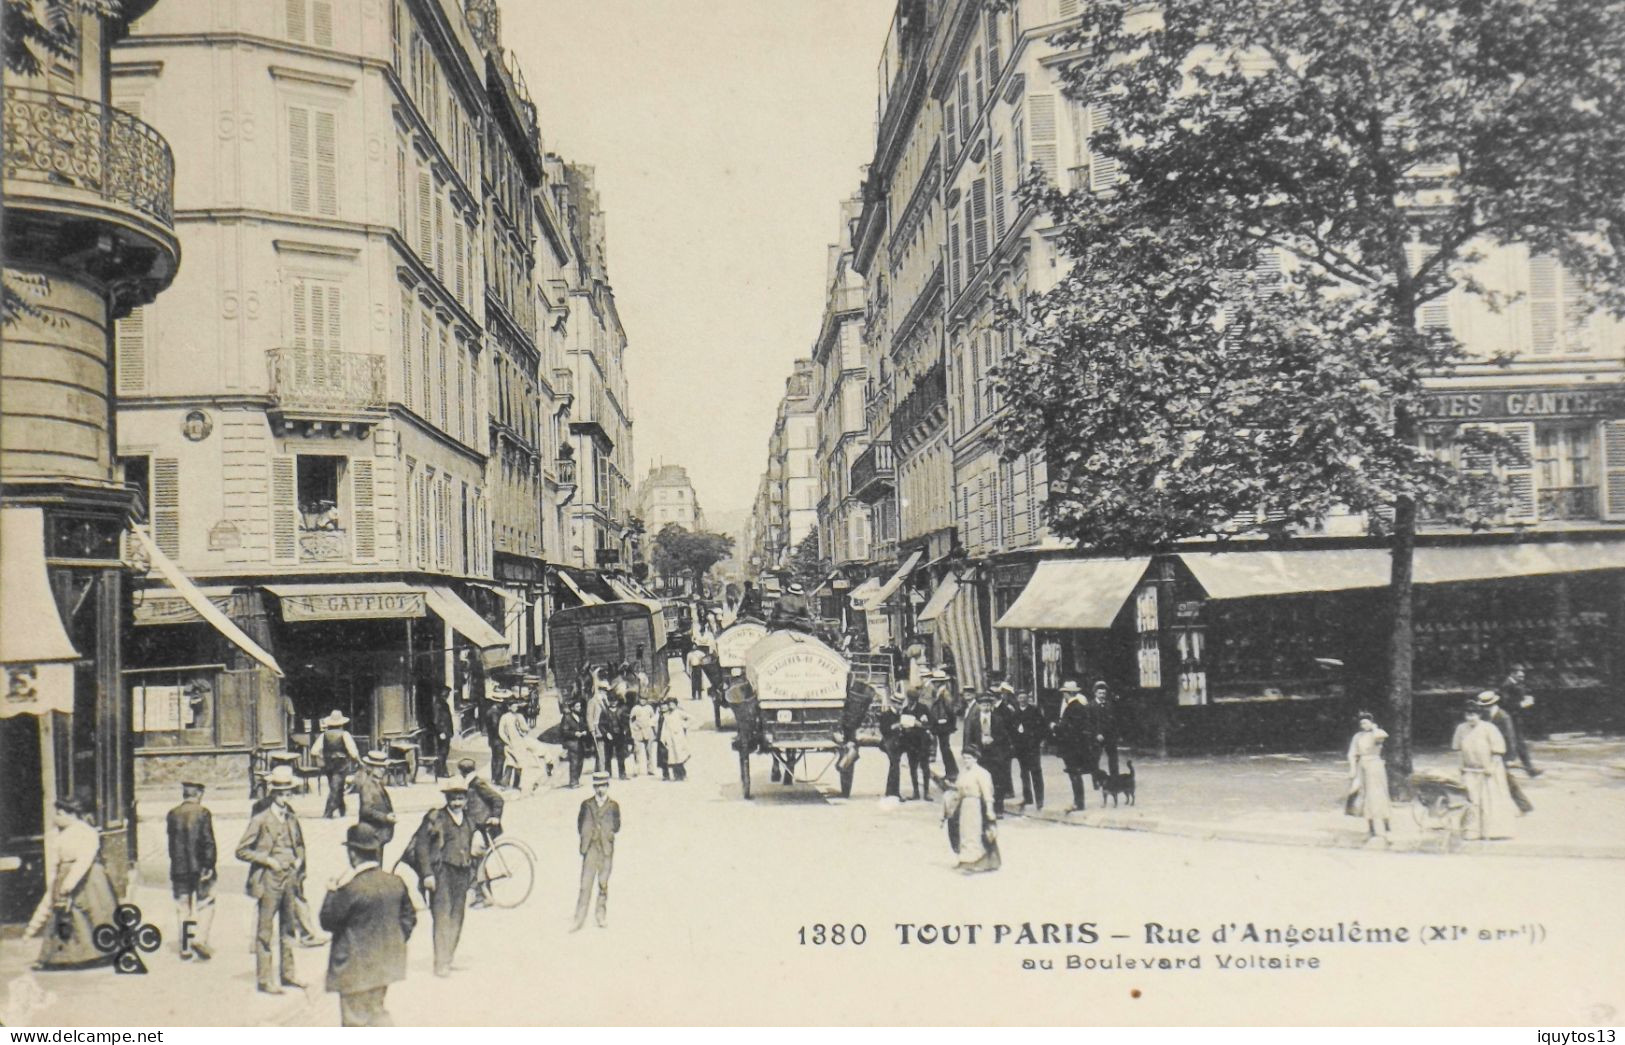 CPA. [75] > TOUT PARIS > N° 1380 - RUE D'ANGOULEME AU Bd. VOLTAIRE - (XIe Arrt.) - Coll. F. Fleury - TBE - Paris (11)